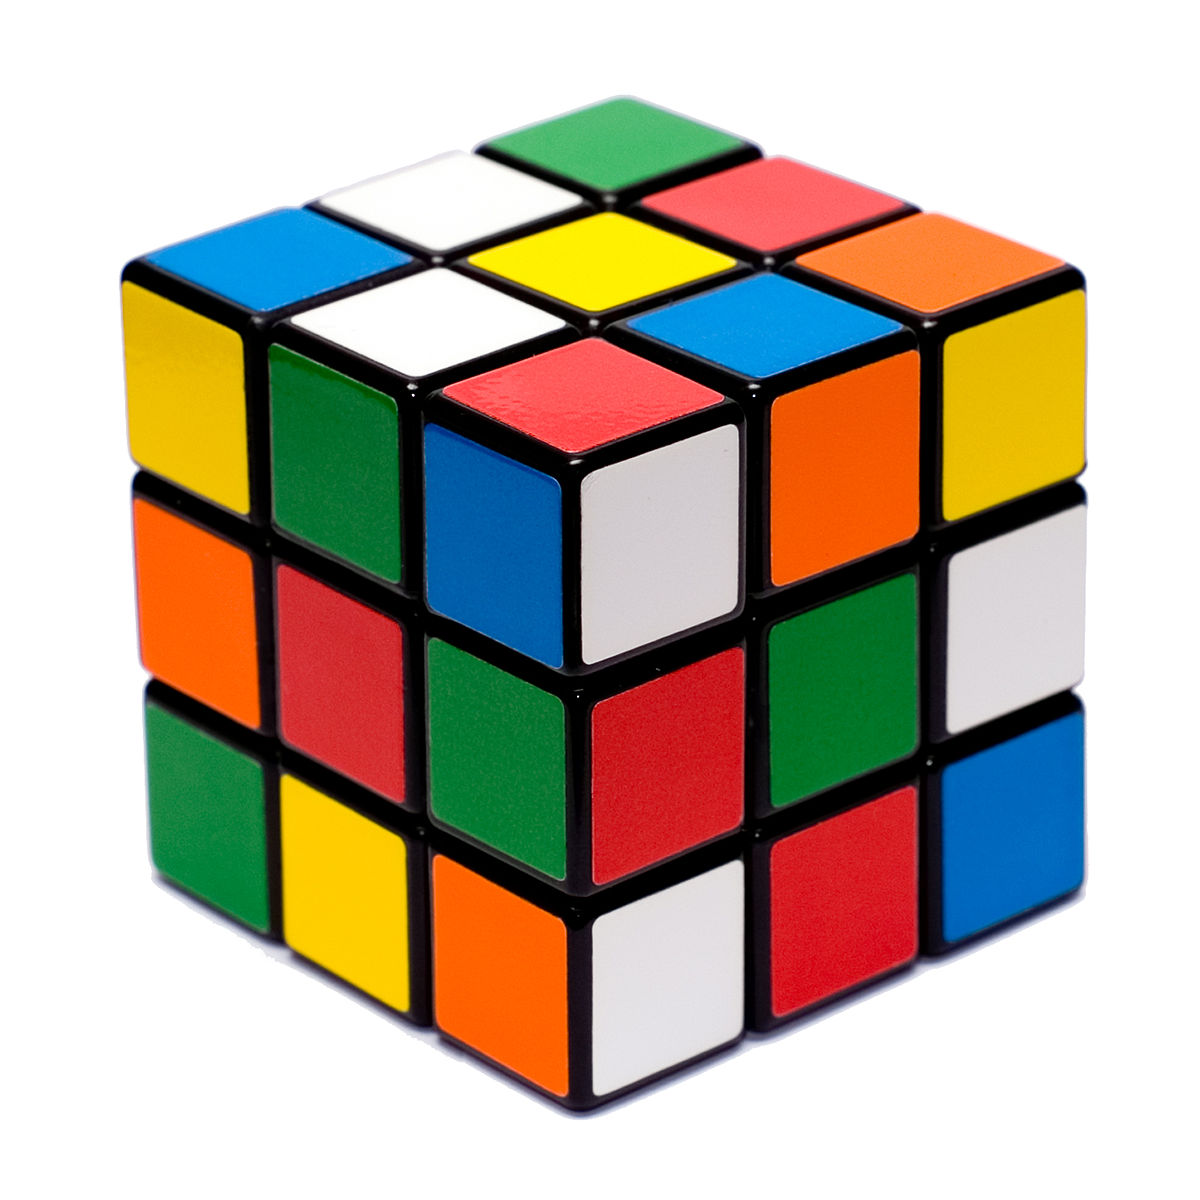 Entenda as Características dos Objetos em Forma de Cubo